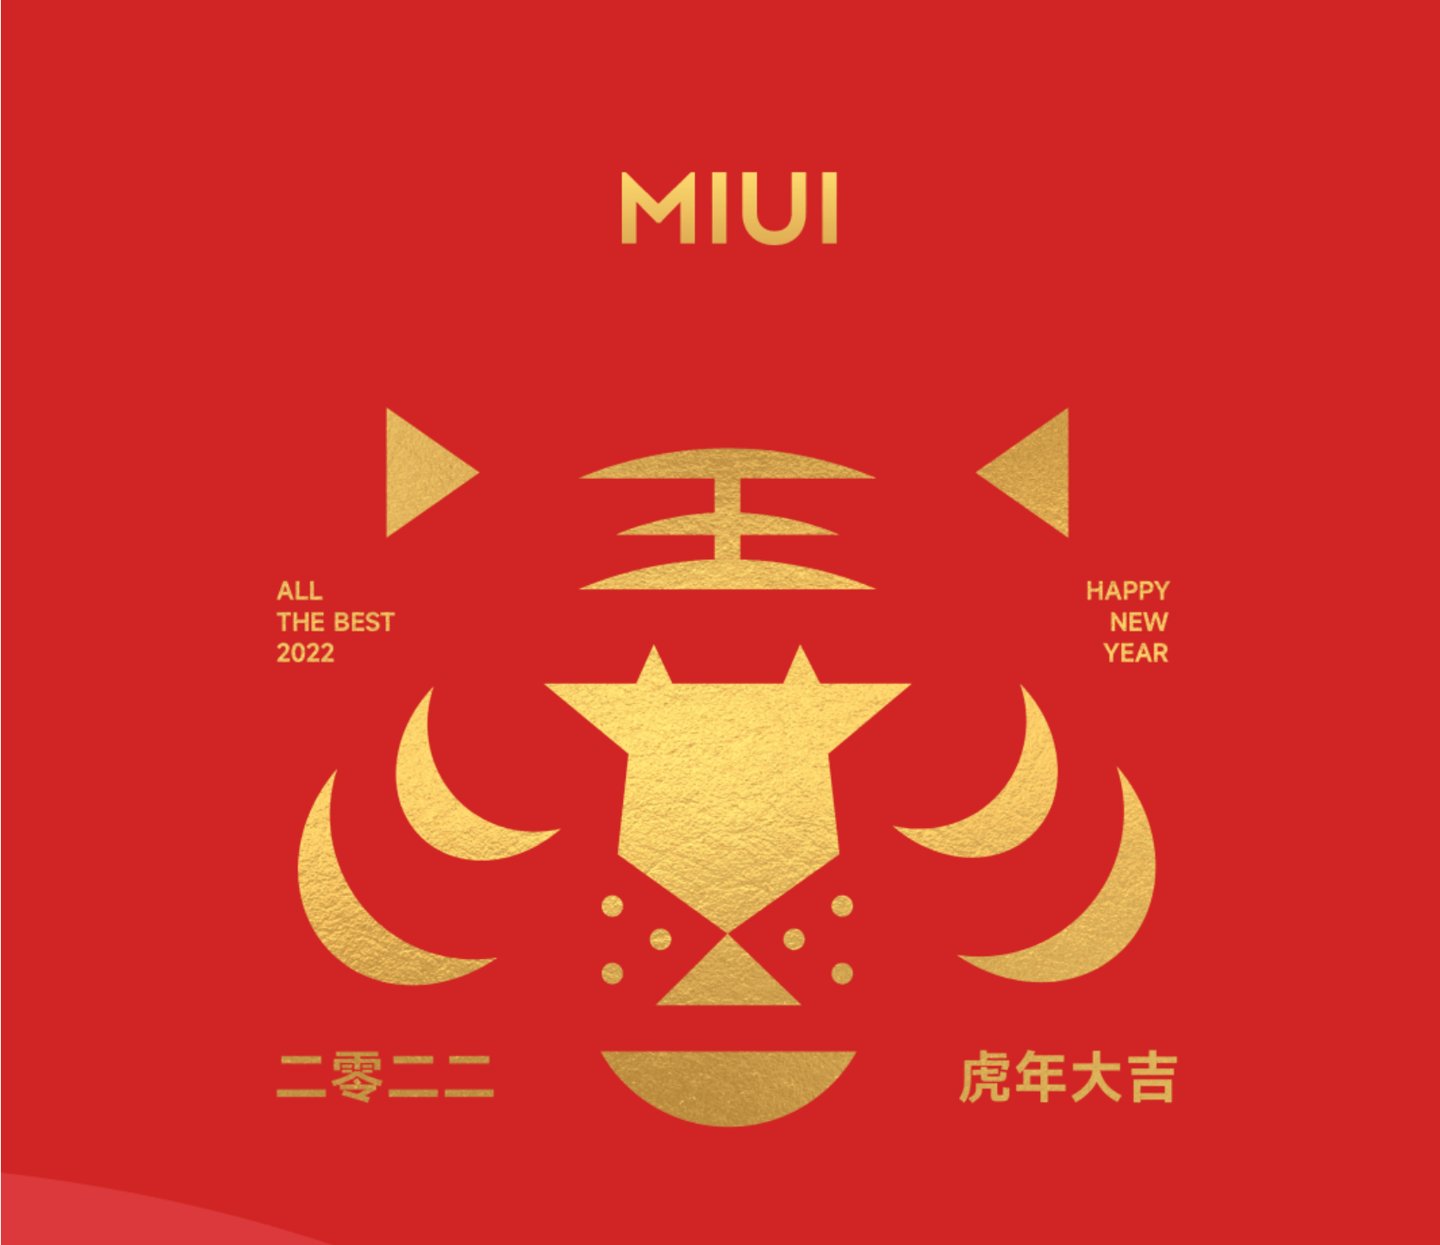 部件|小米手机 MIUI 13 春节小部件上线